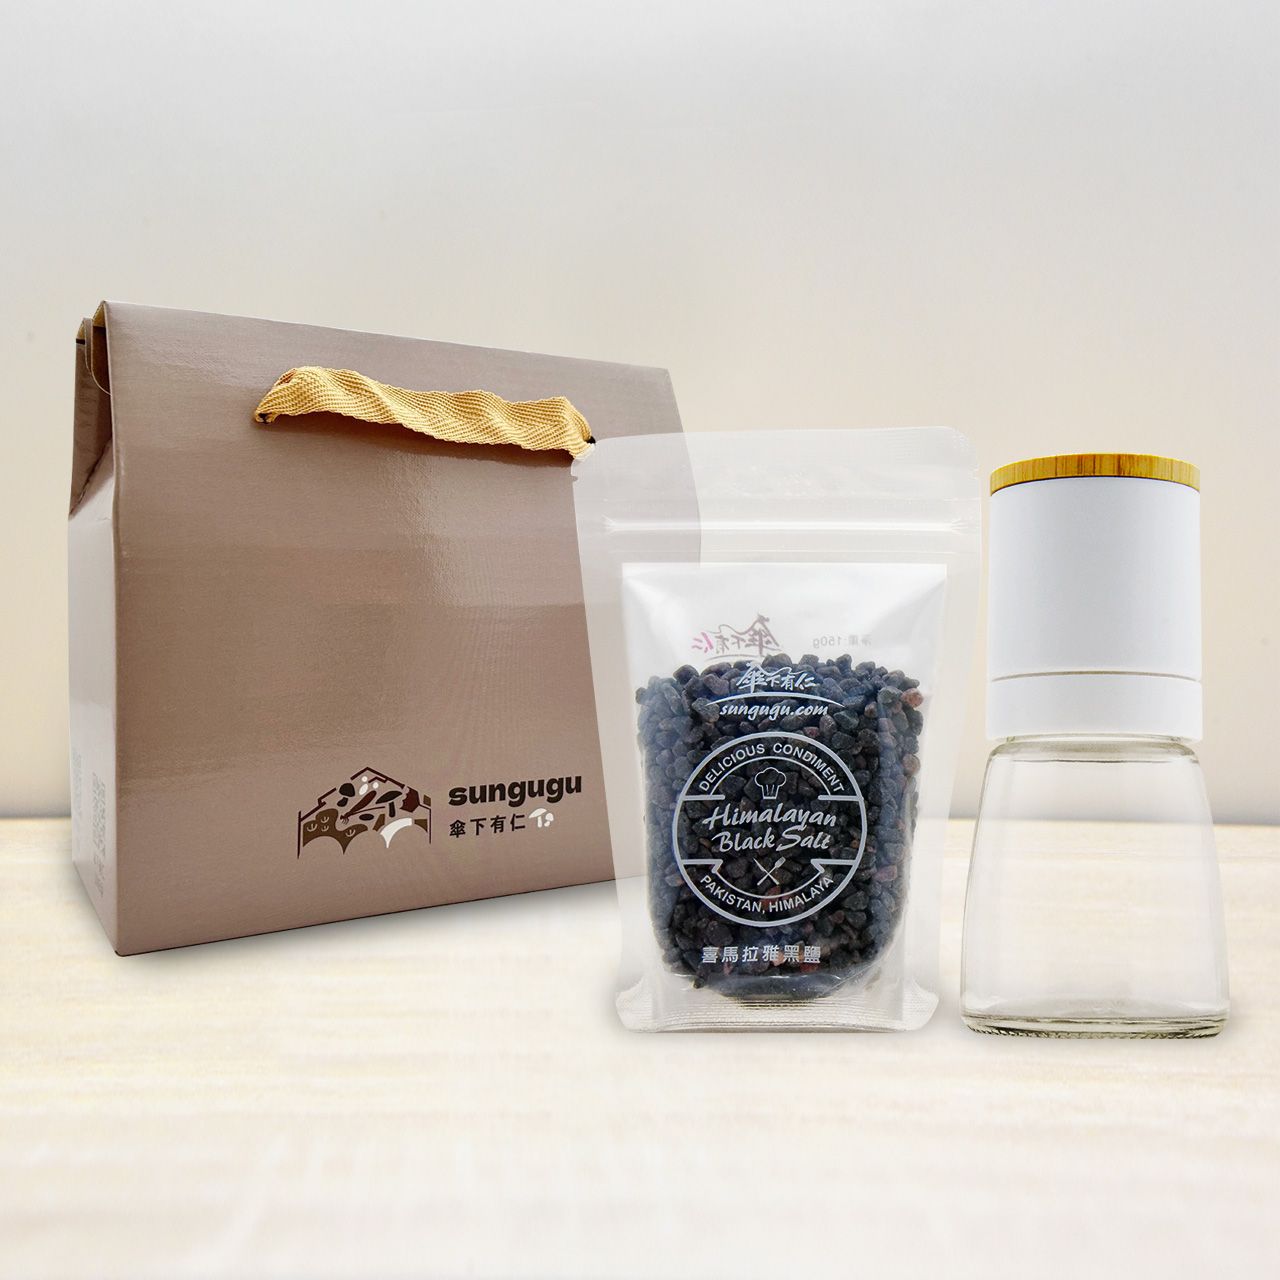 喜馬拉雅山黑鹽150g袋裝+研磨罐禮盒組